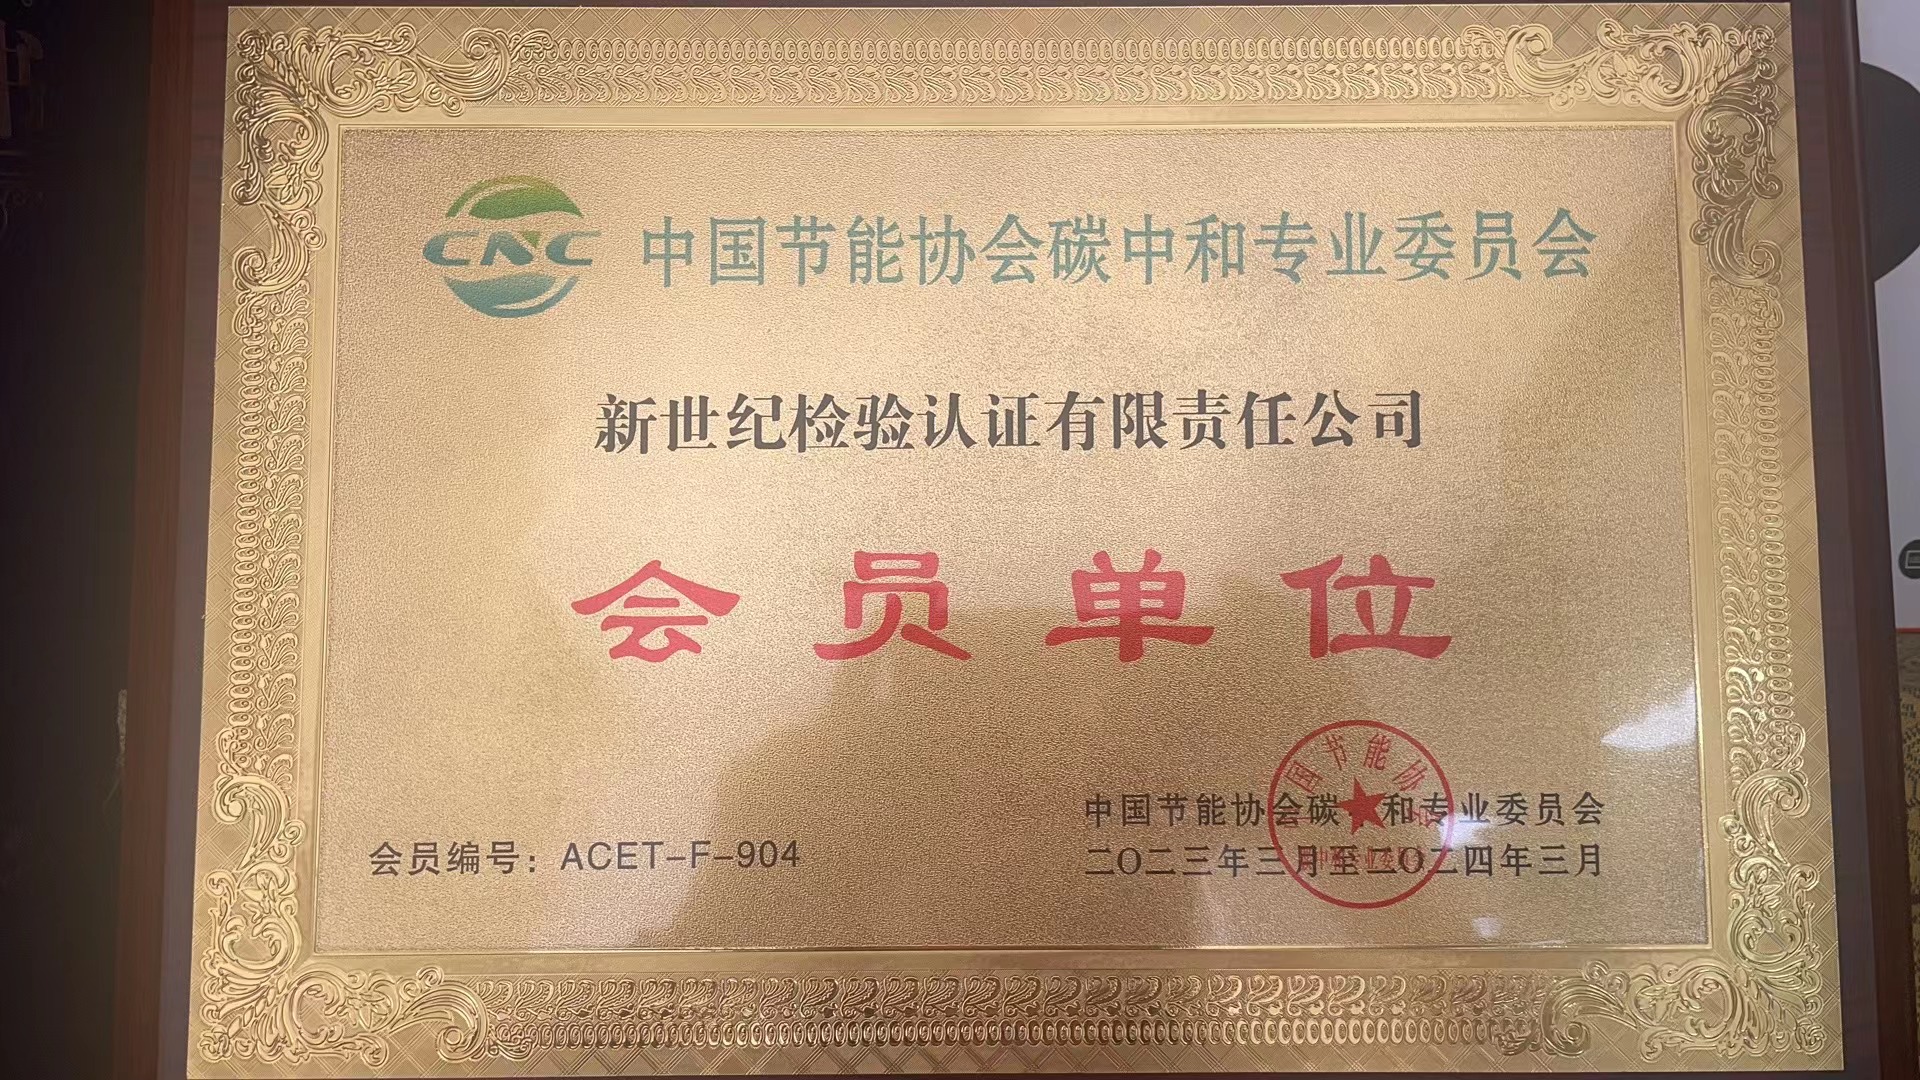 中国节能协会碳中和专业委员会会员单位